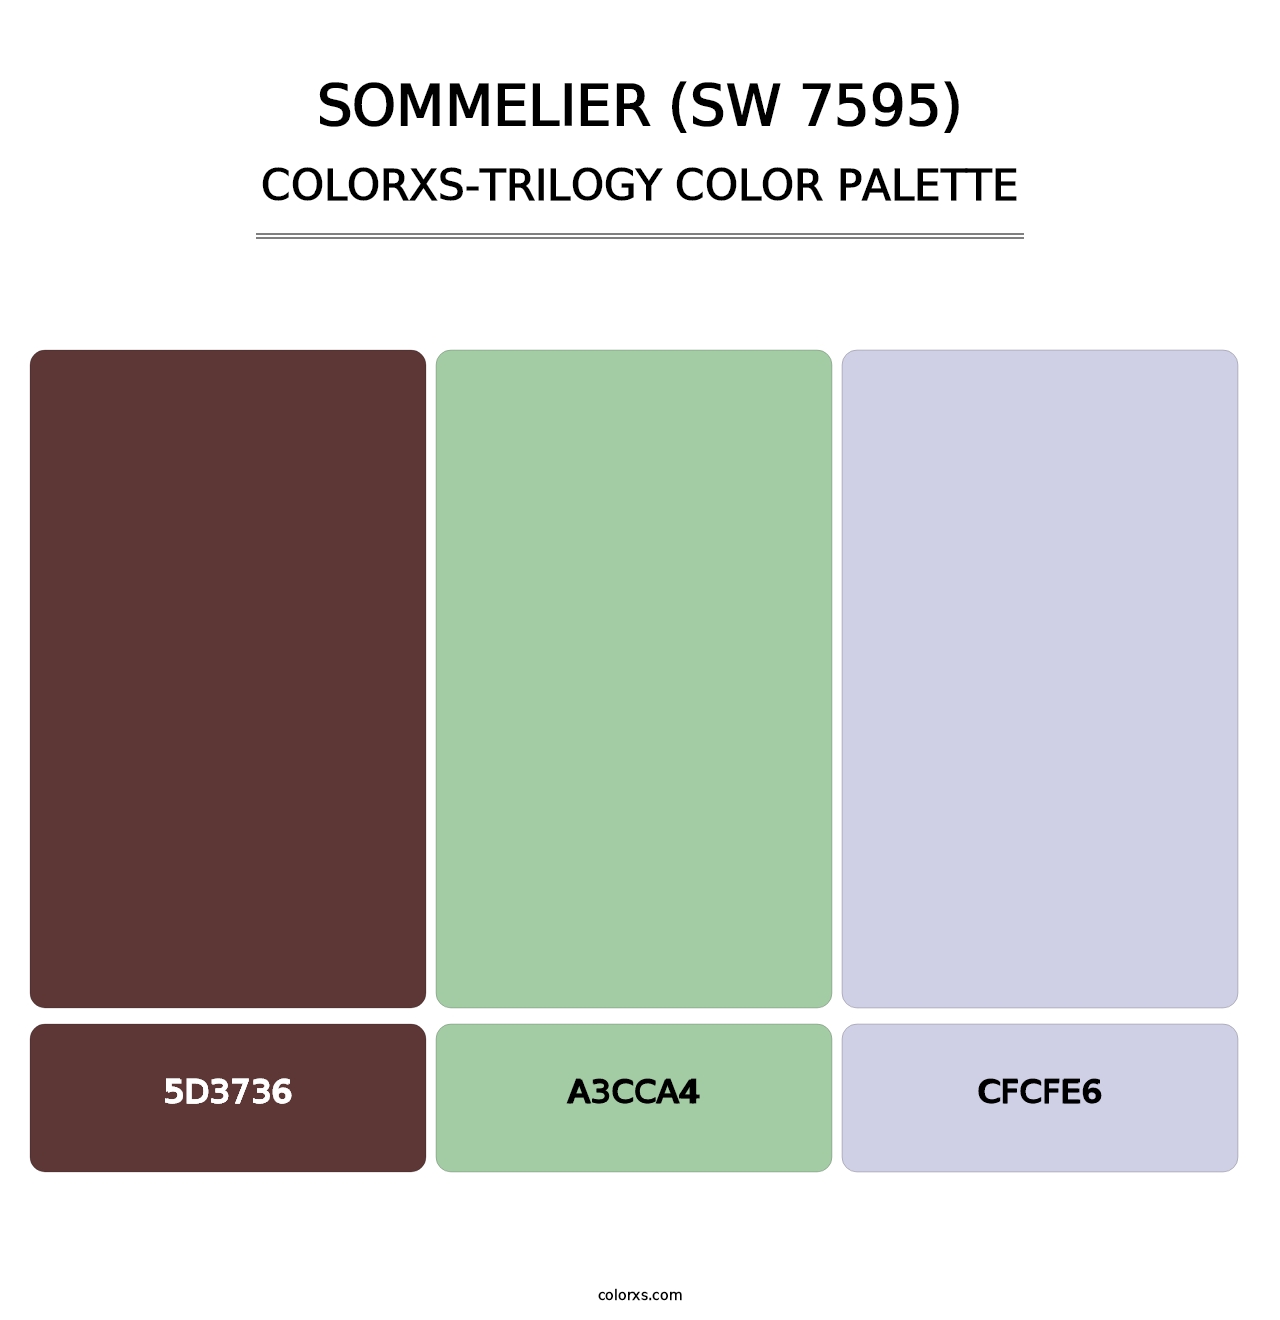 Sommelier (SW 7595) - Colorxs Trilogy Palette